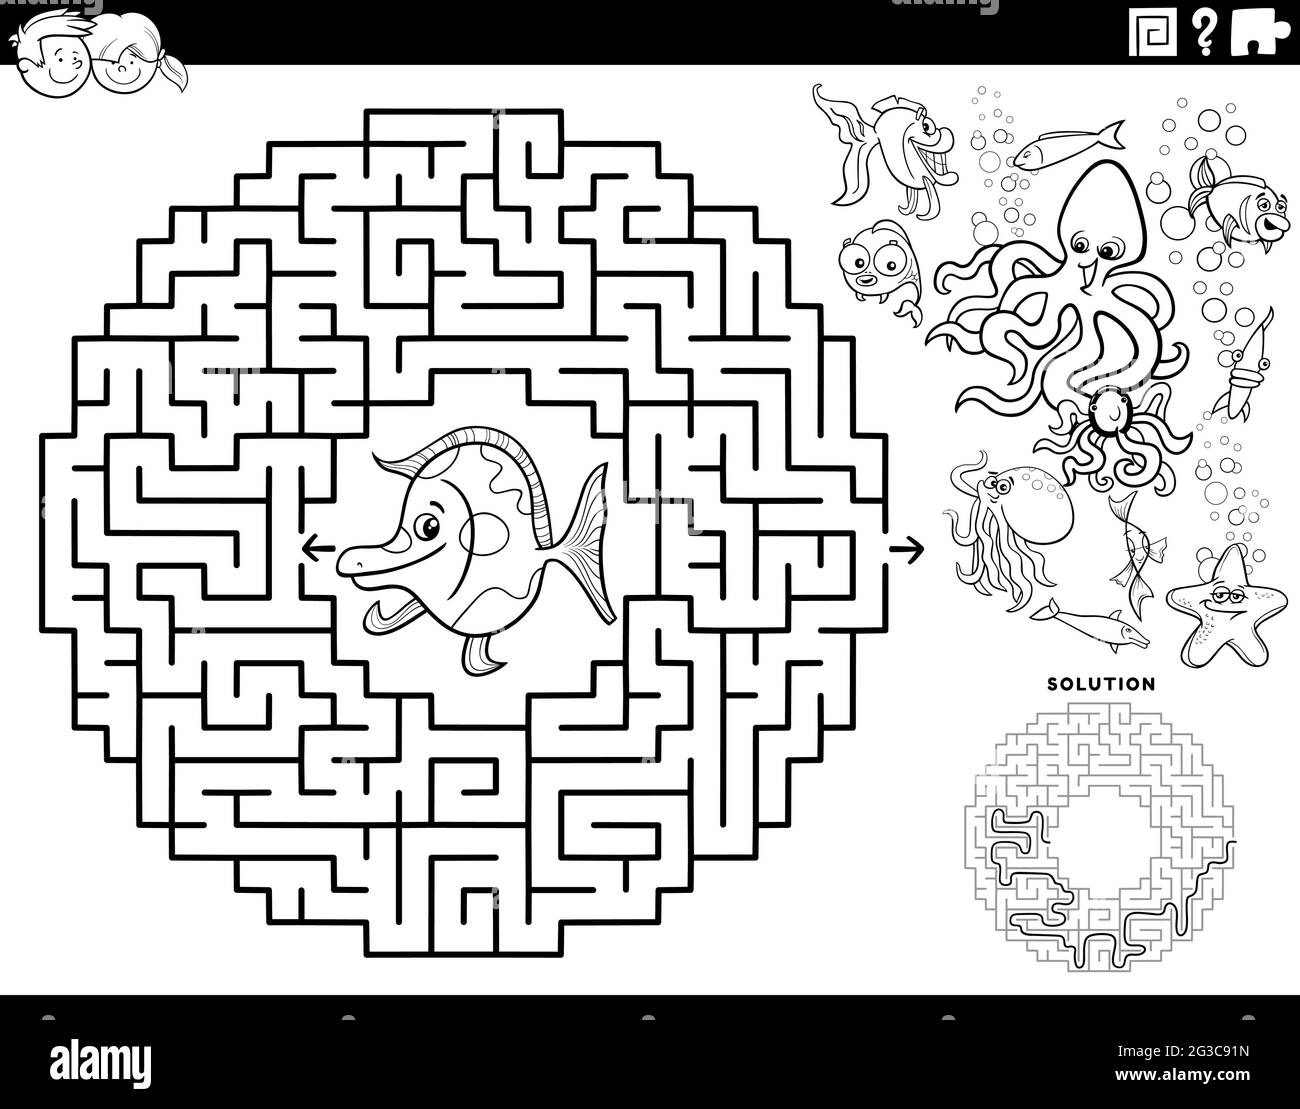 Dessin animé noir et blanc illustration du jeu éducatif de puzzle de labyrinthe pour les enfants avec le poisson drôle et les animaux de mer caractères coloriage livre page Illustration de Vecteur